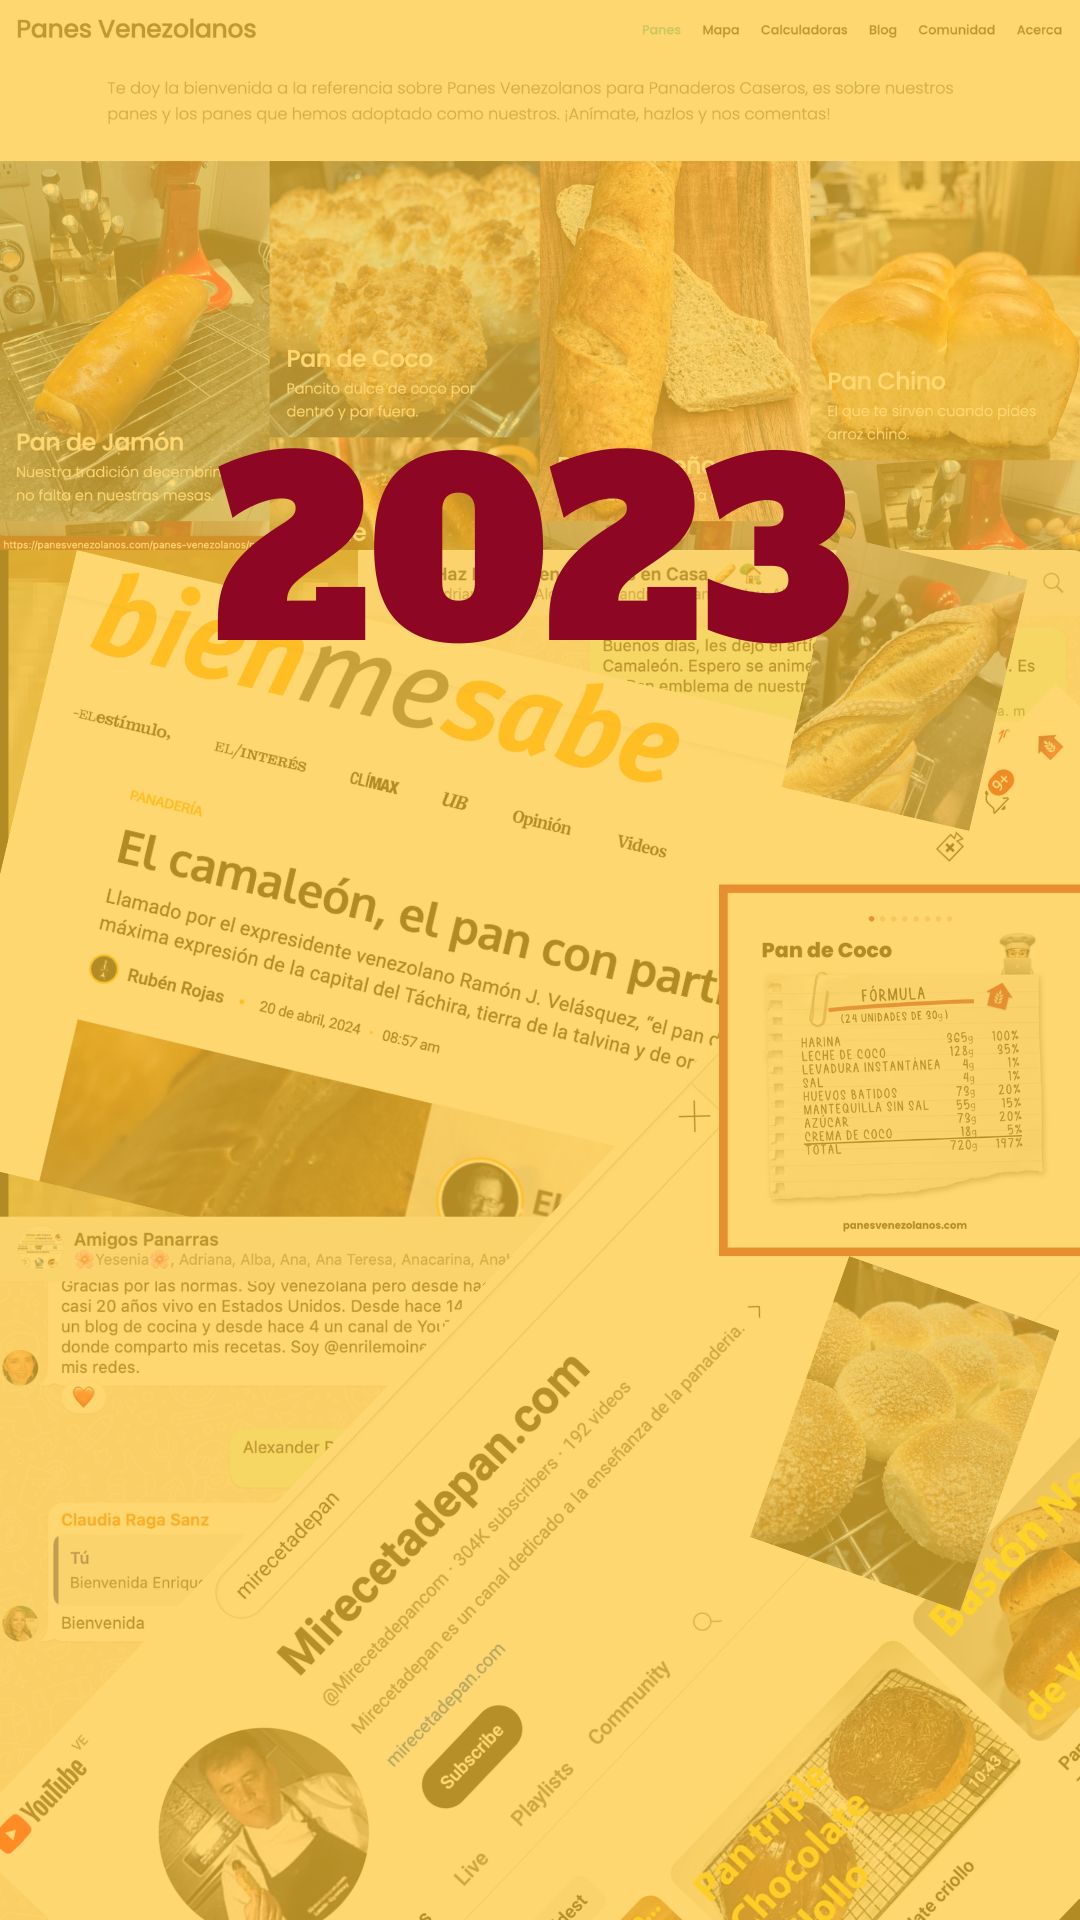 Bitácora de referencias sobre Panadería Venezolana 2023